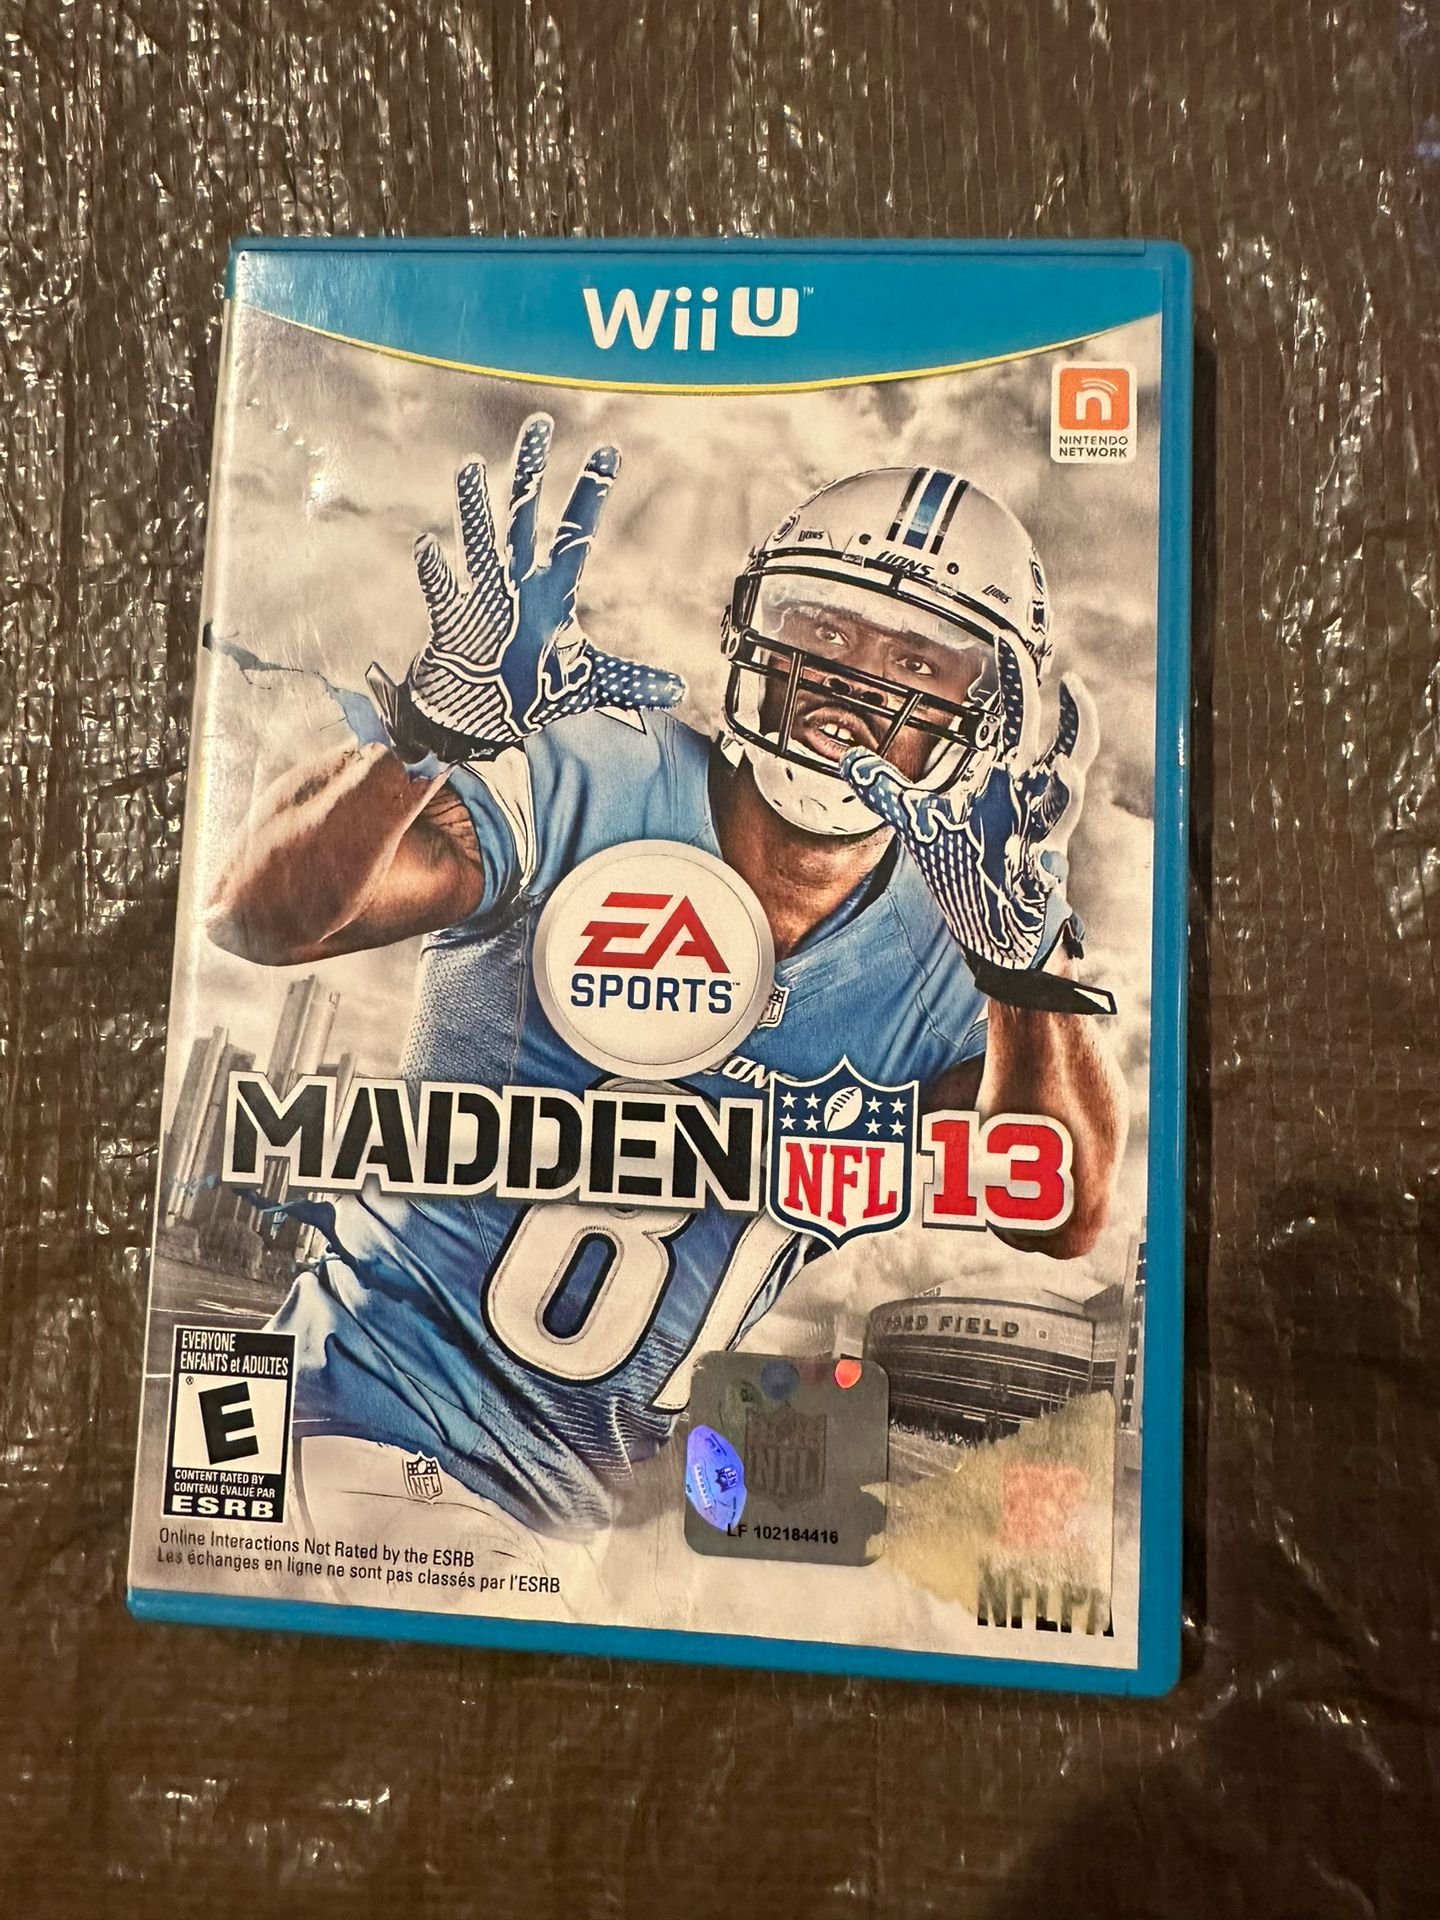 Wii Madden NFL 13